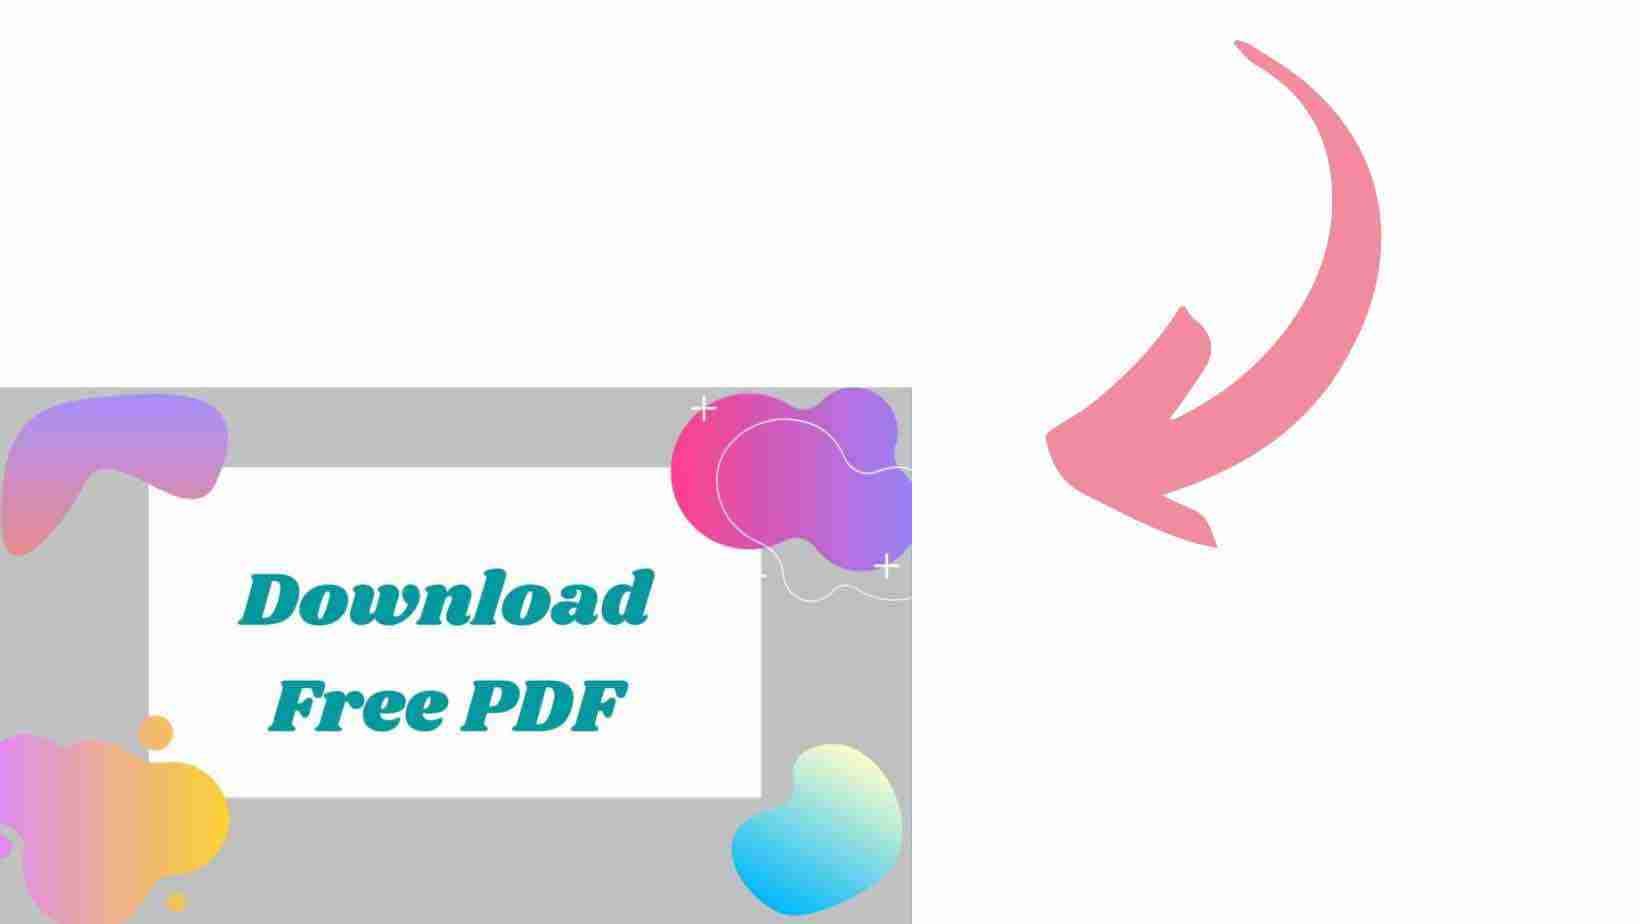 Download Free PDF Button